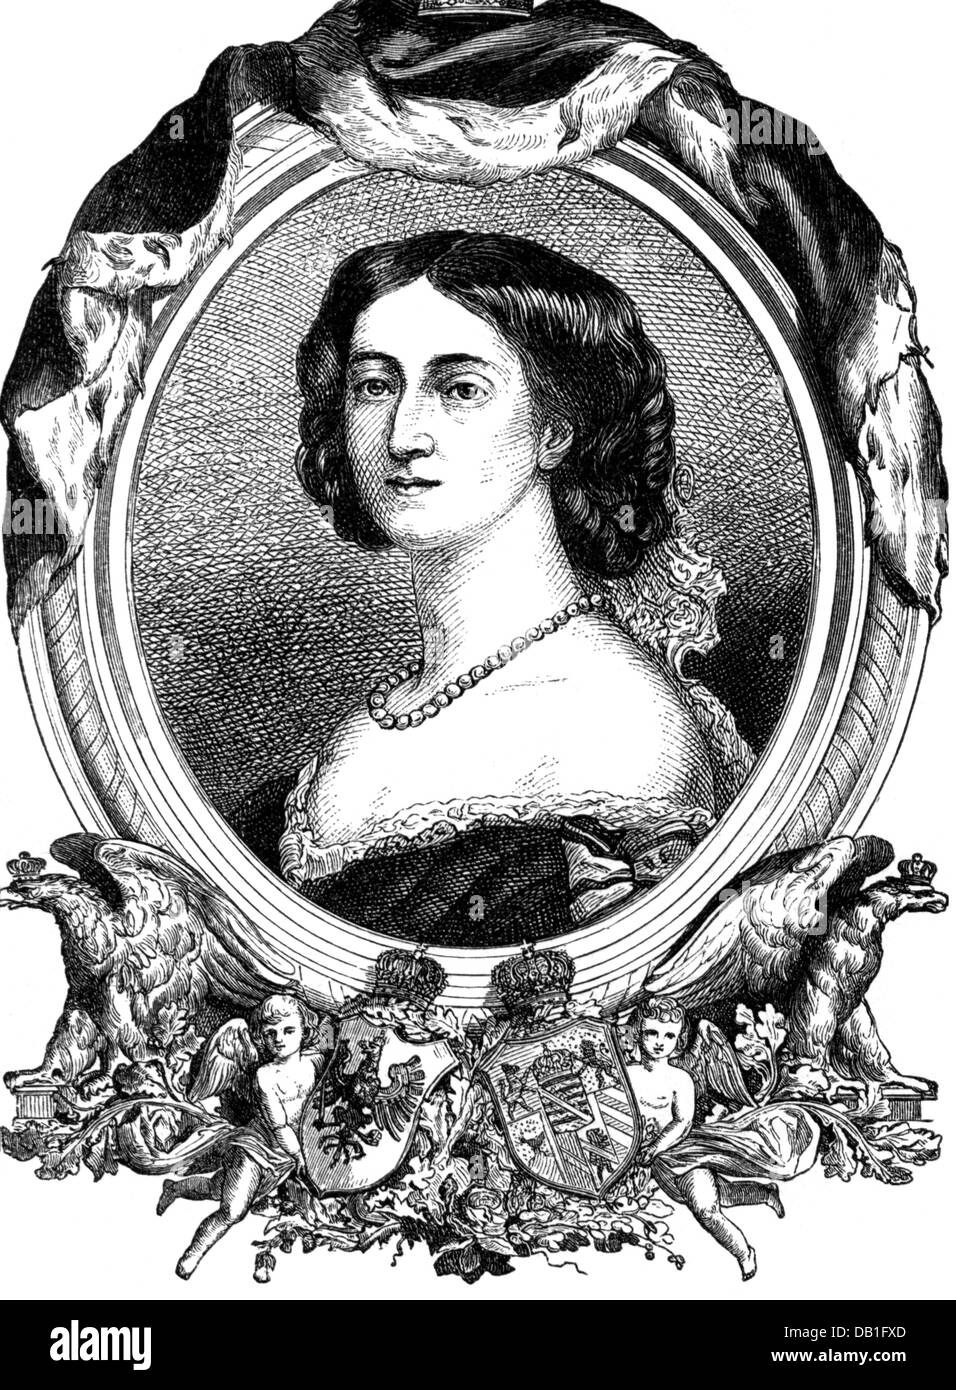 Augusta Marie, 30.9.1811 - 7.1.1890, Imperatrice tedesca 18.1.1871 - 9.3.1888, Ritratto, incisione in legno, 19th secolo, Foto Stock